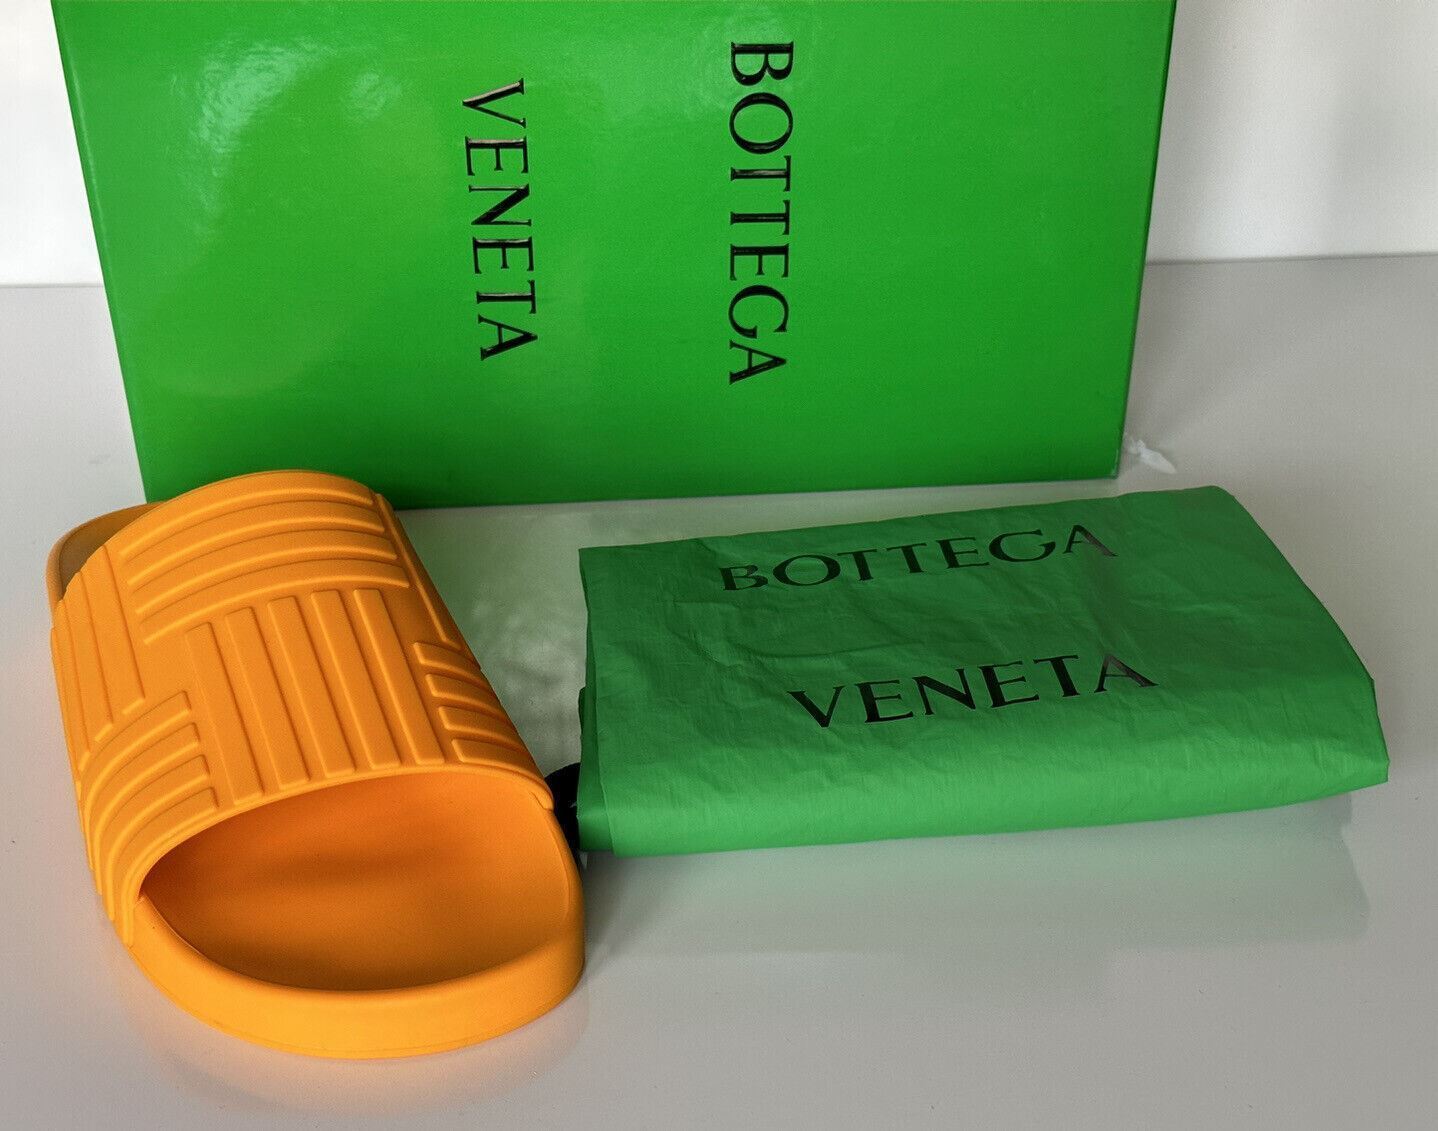 Мужские резиновые шлёпанцы-мандарины Bottega Veneta, стоимость 420 долларов США, 11 США (44) 690105 